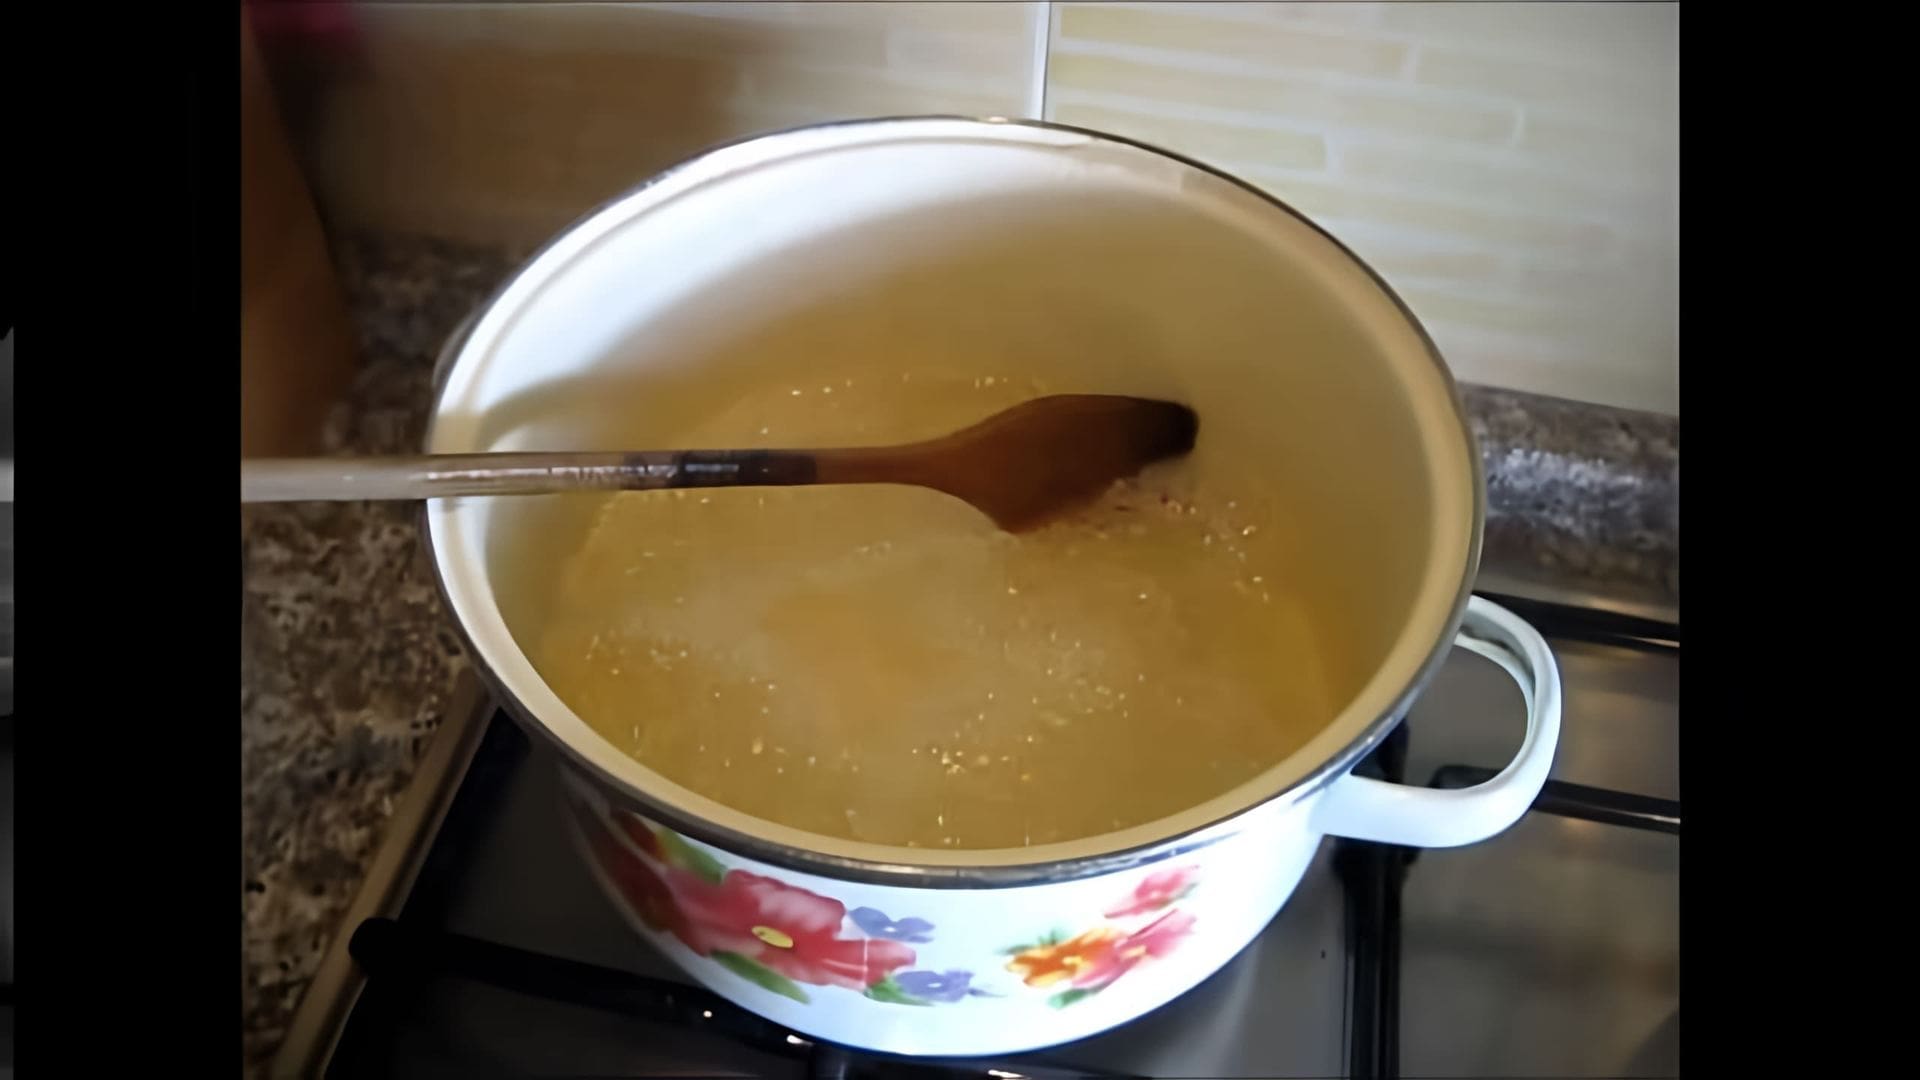 В этом видео демонстрируется процесс приготовления сахарного сиропа для арабских сладостей